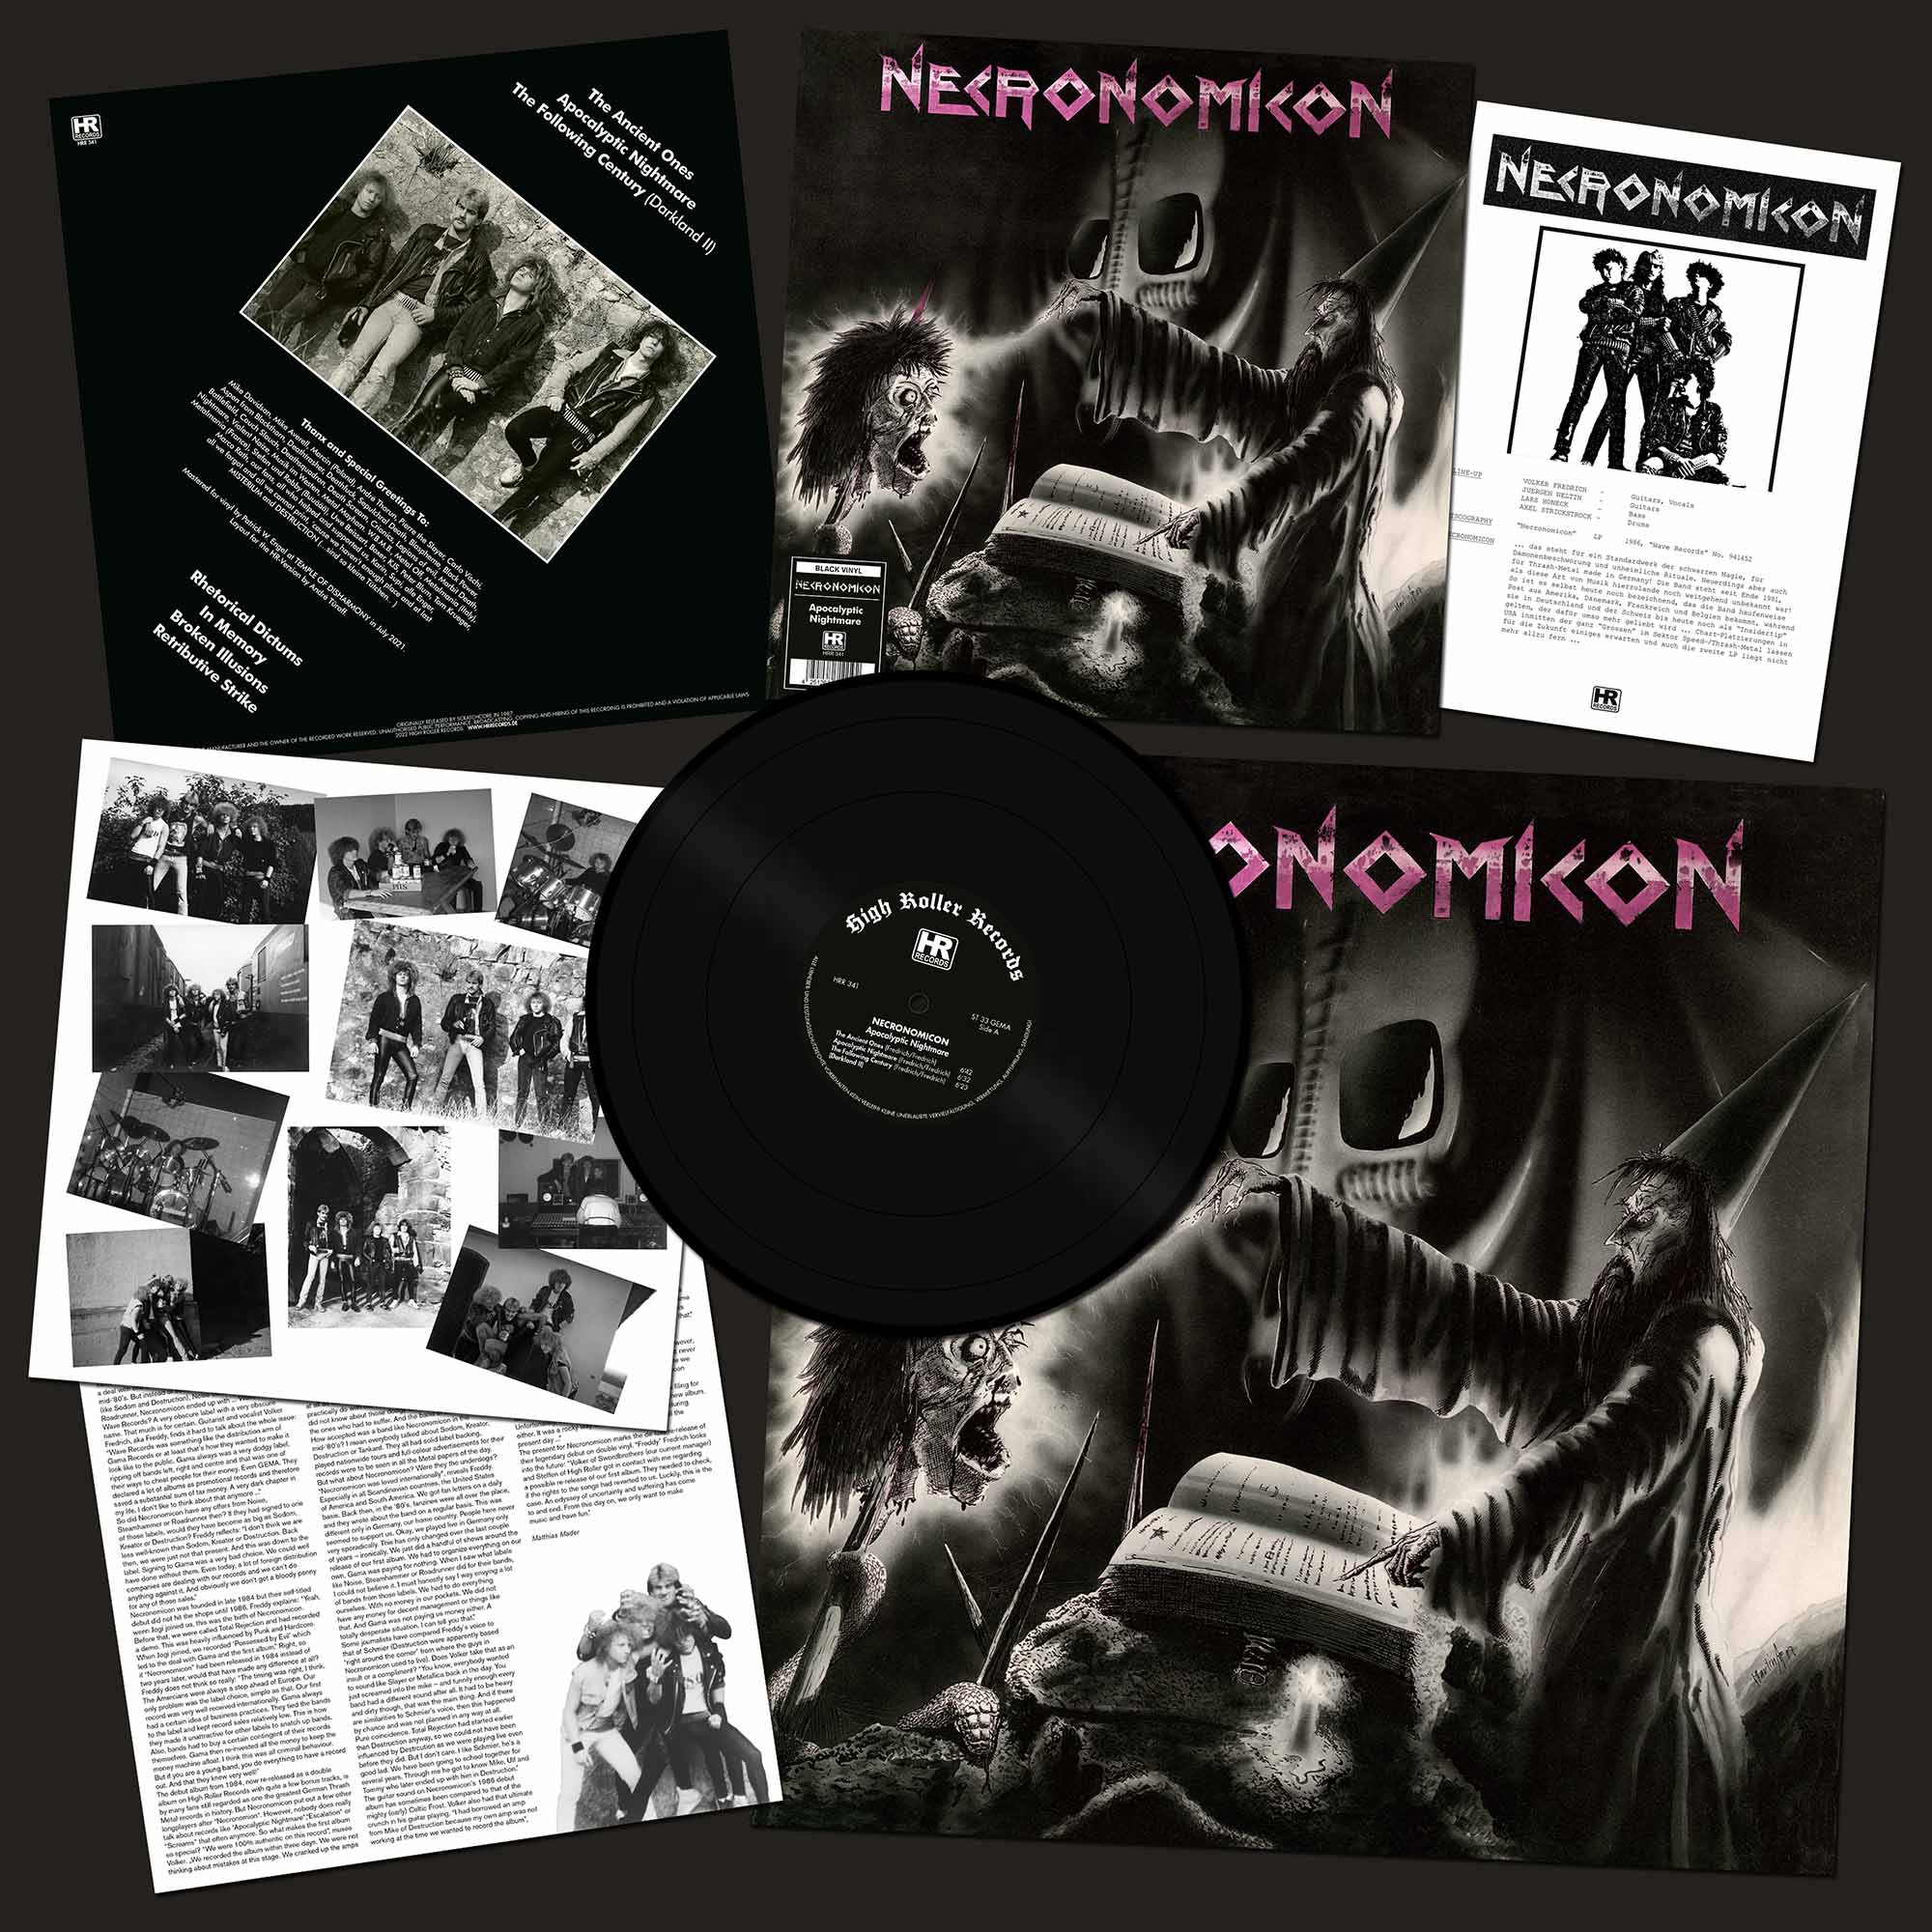 NECRONOMICON - Apocalyptic Nightmare  LP